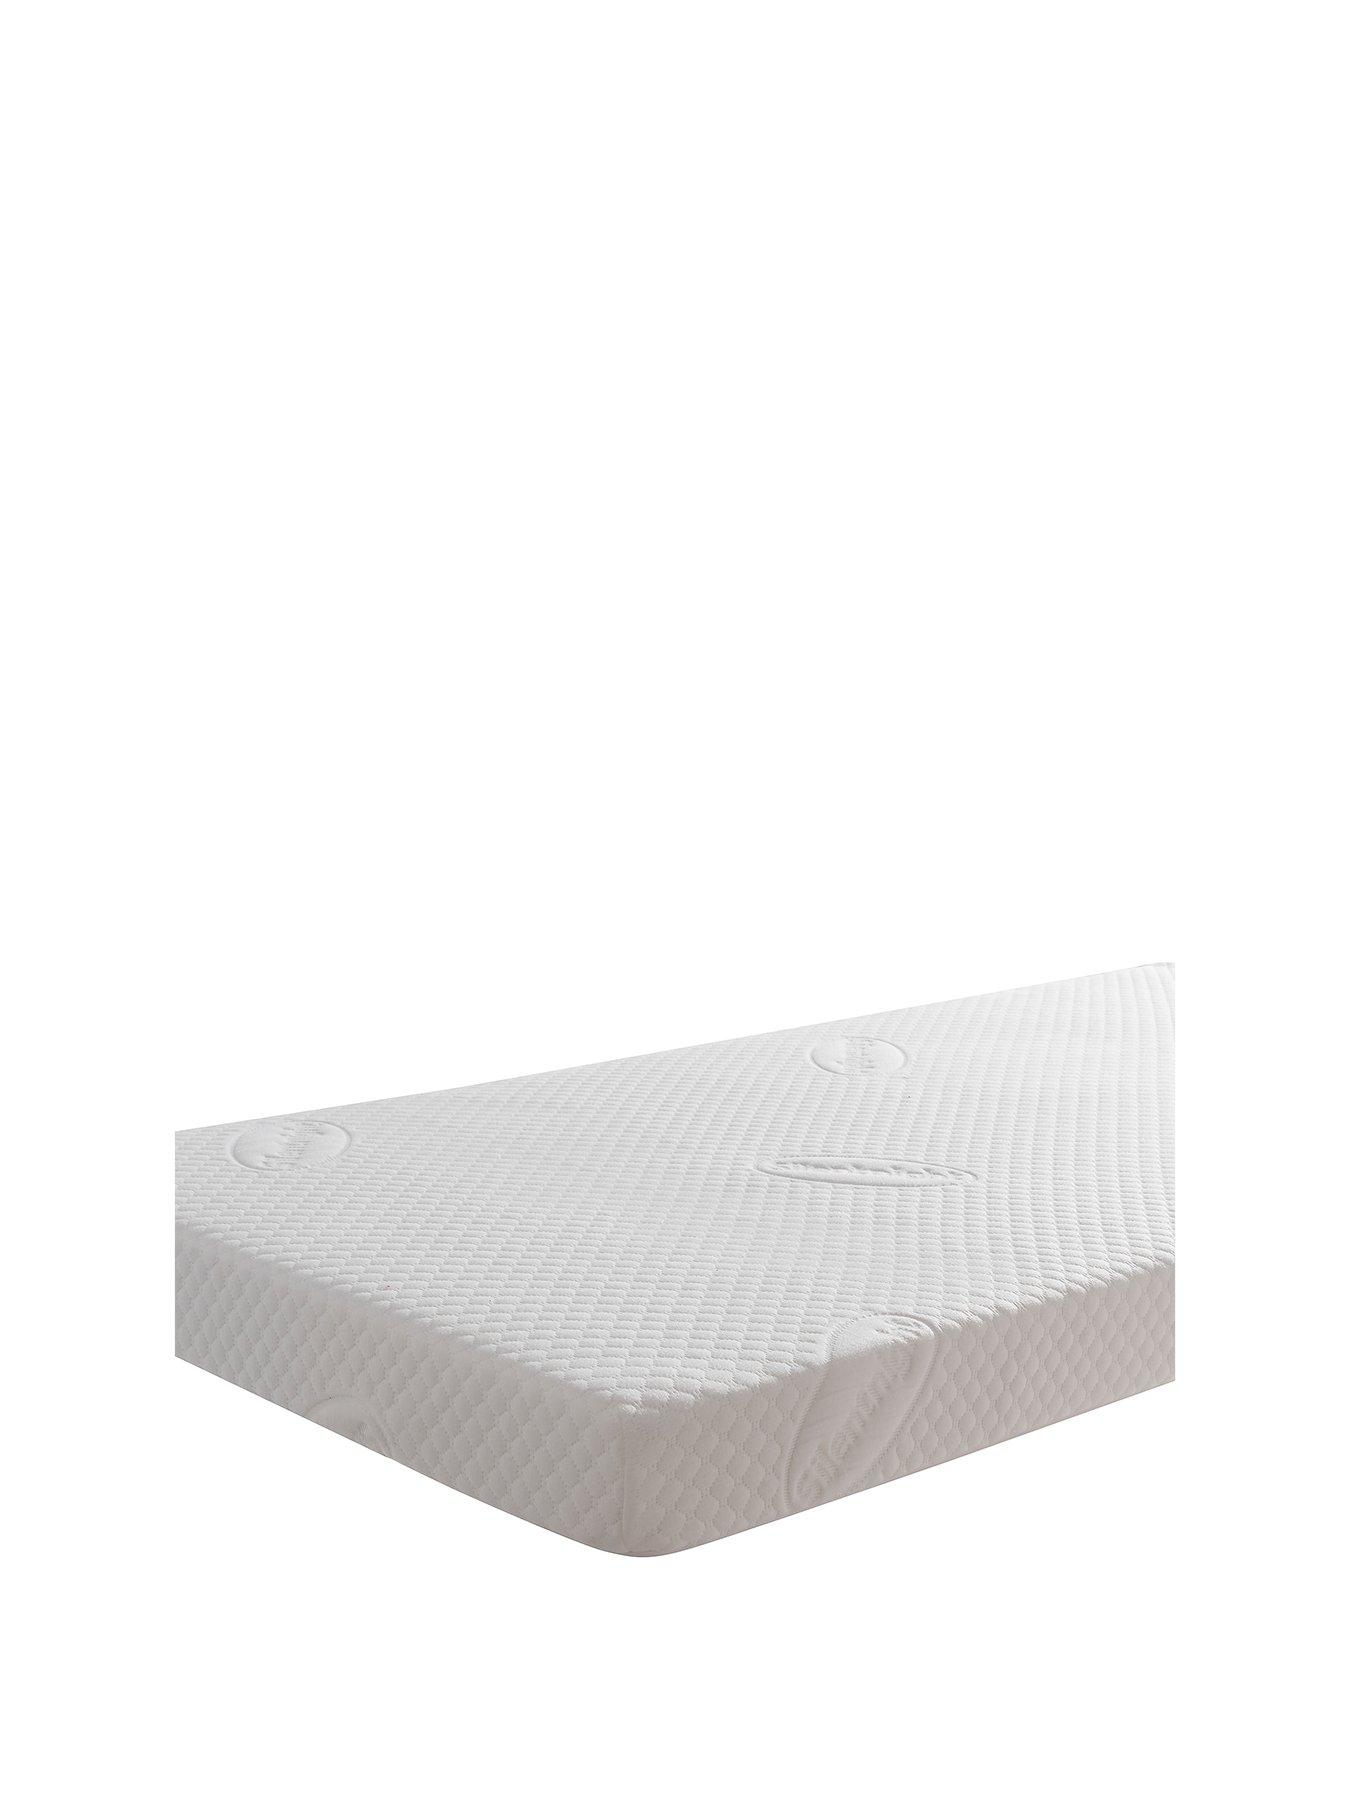 cot mattress uk